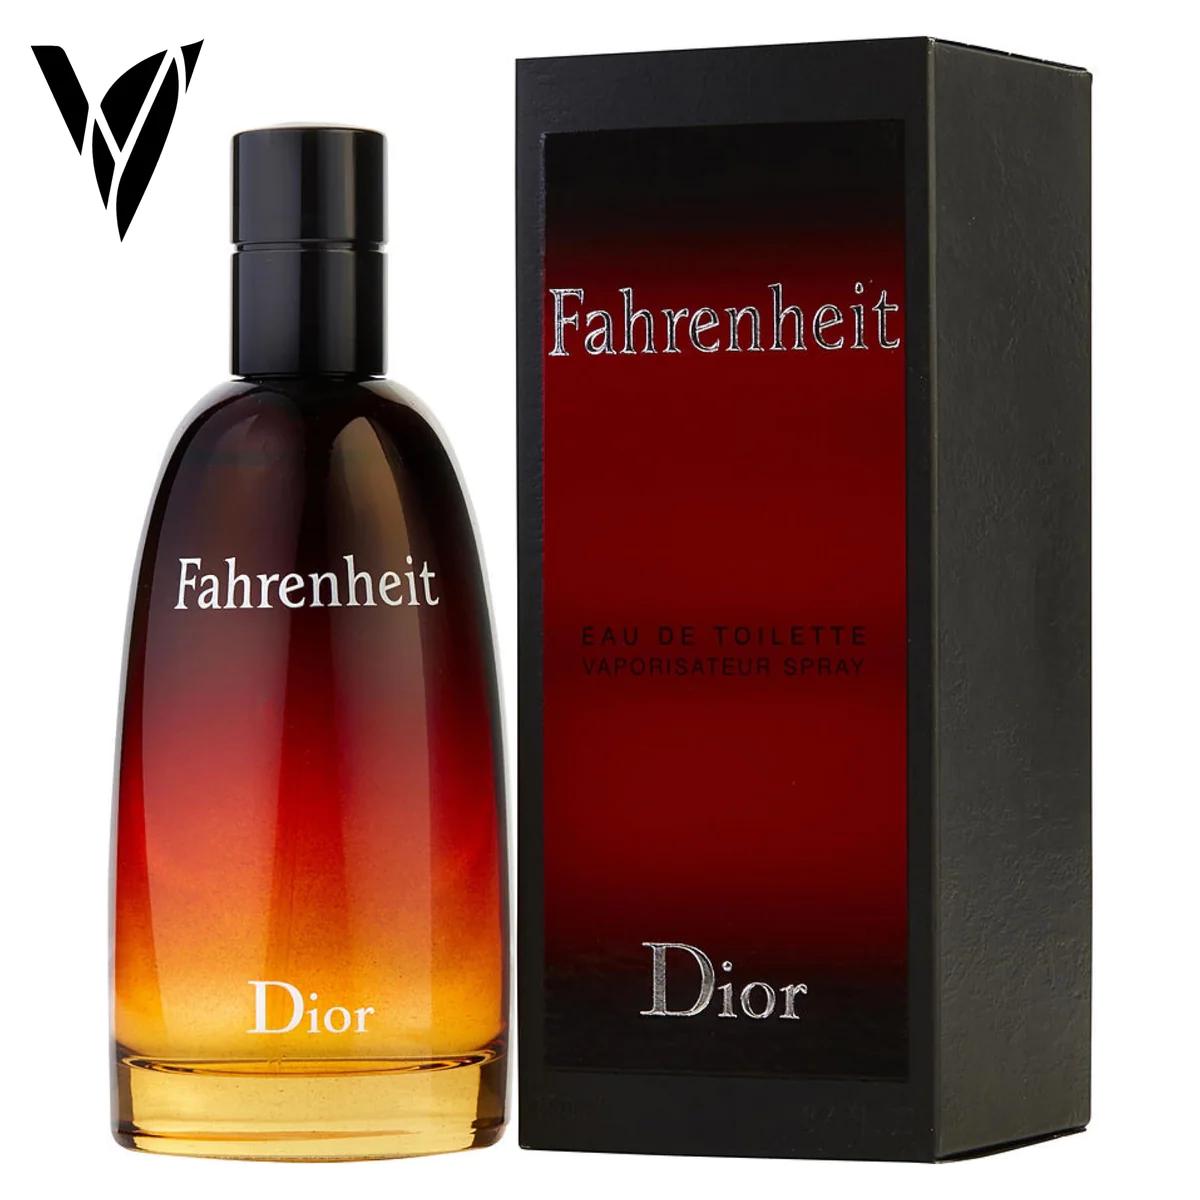 fahrenheit perfume hombre opiniones - Qué contiene el perfume Fahrenheit